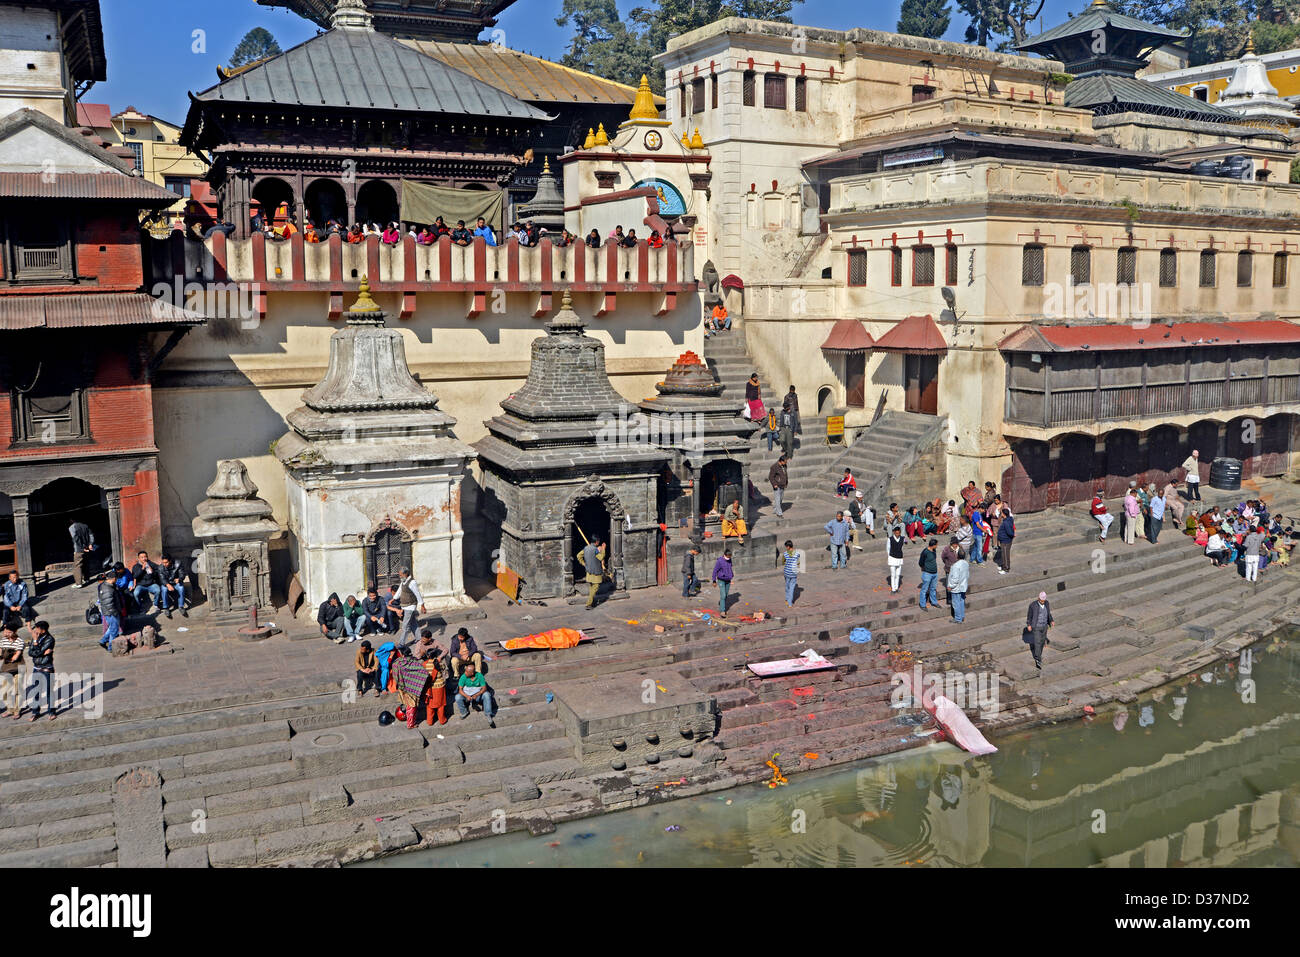 La rivière Bagmati et sanctuaire de Pashupatinath Népal Katmandou Banque D'Images